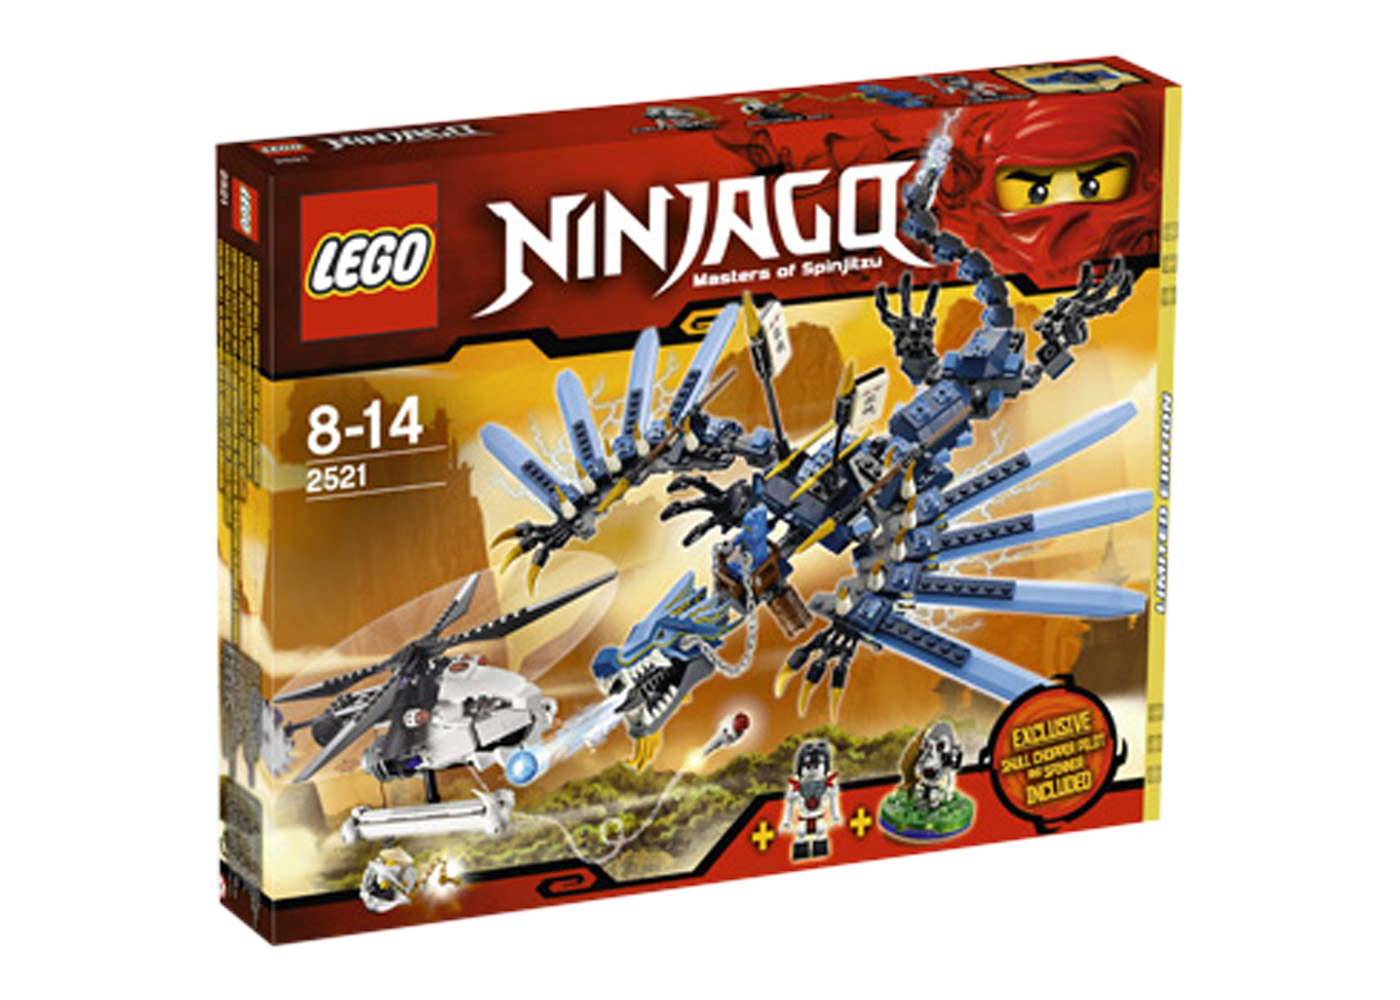 LEGO Ninjago Lightning Dragon Battle Set 2521 - US